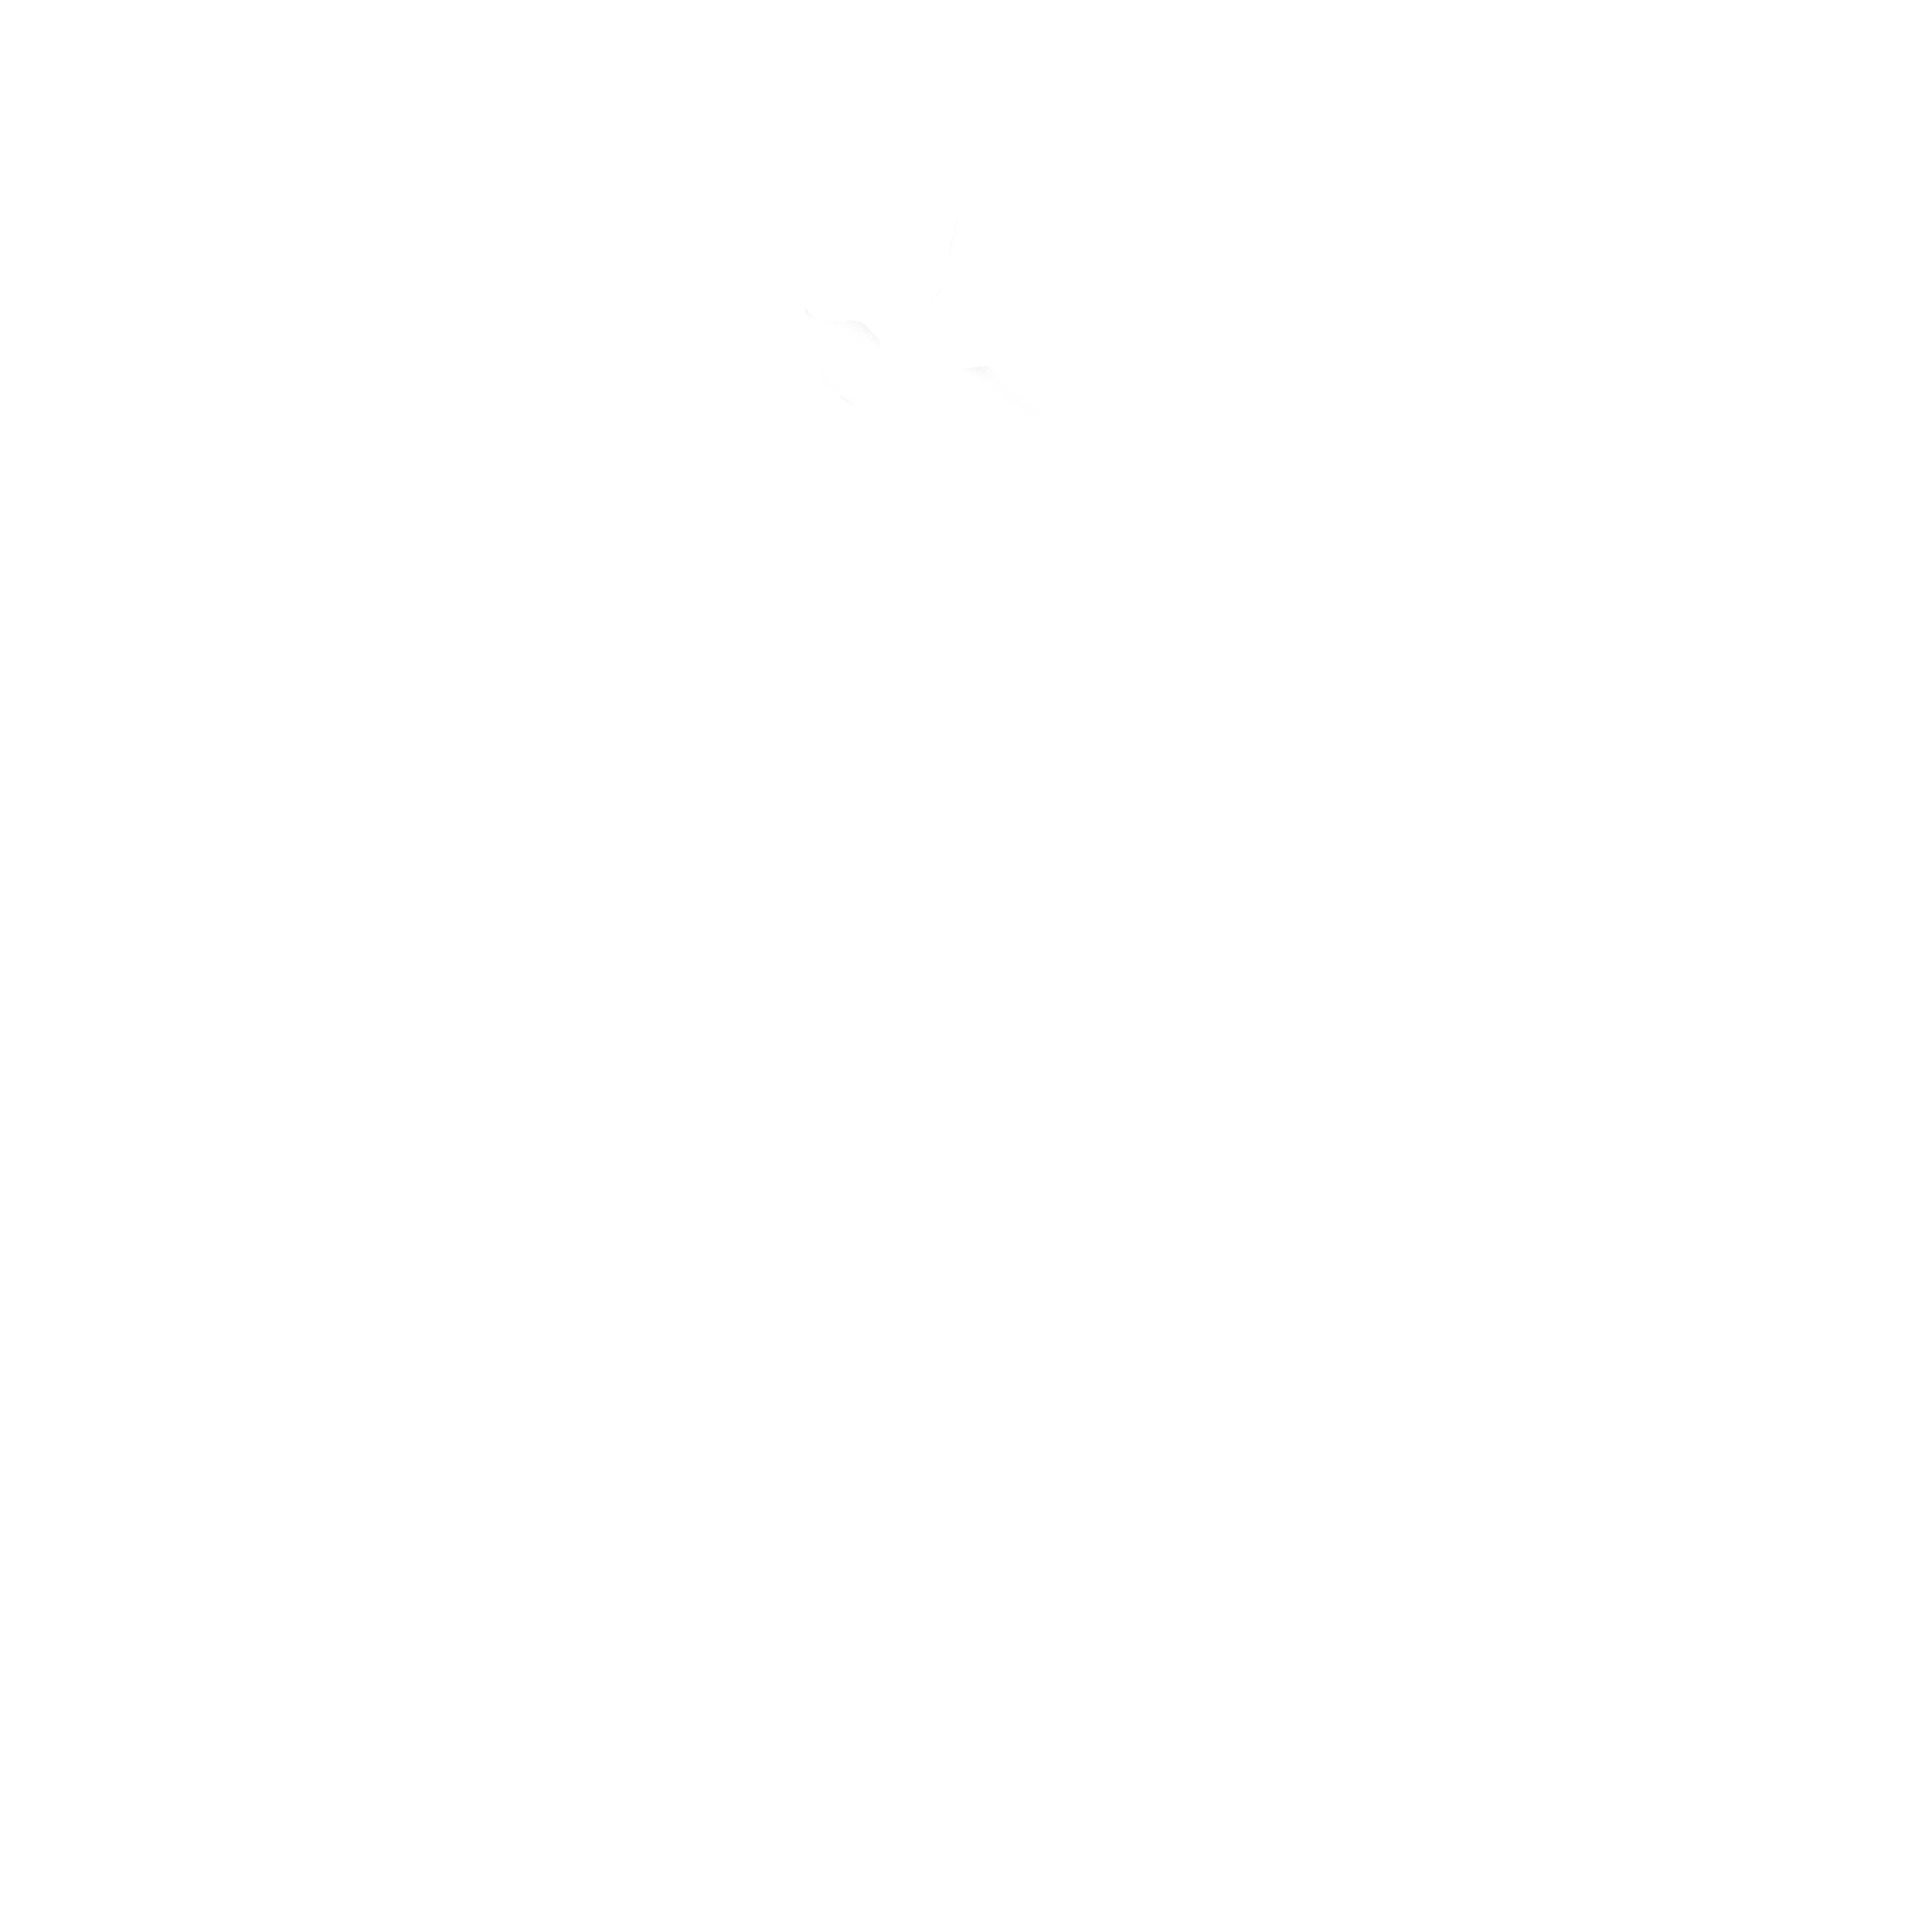 O Brasil que a gente imagina